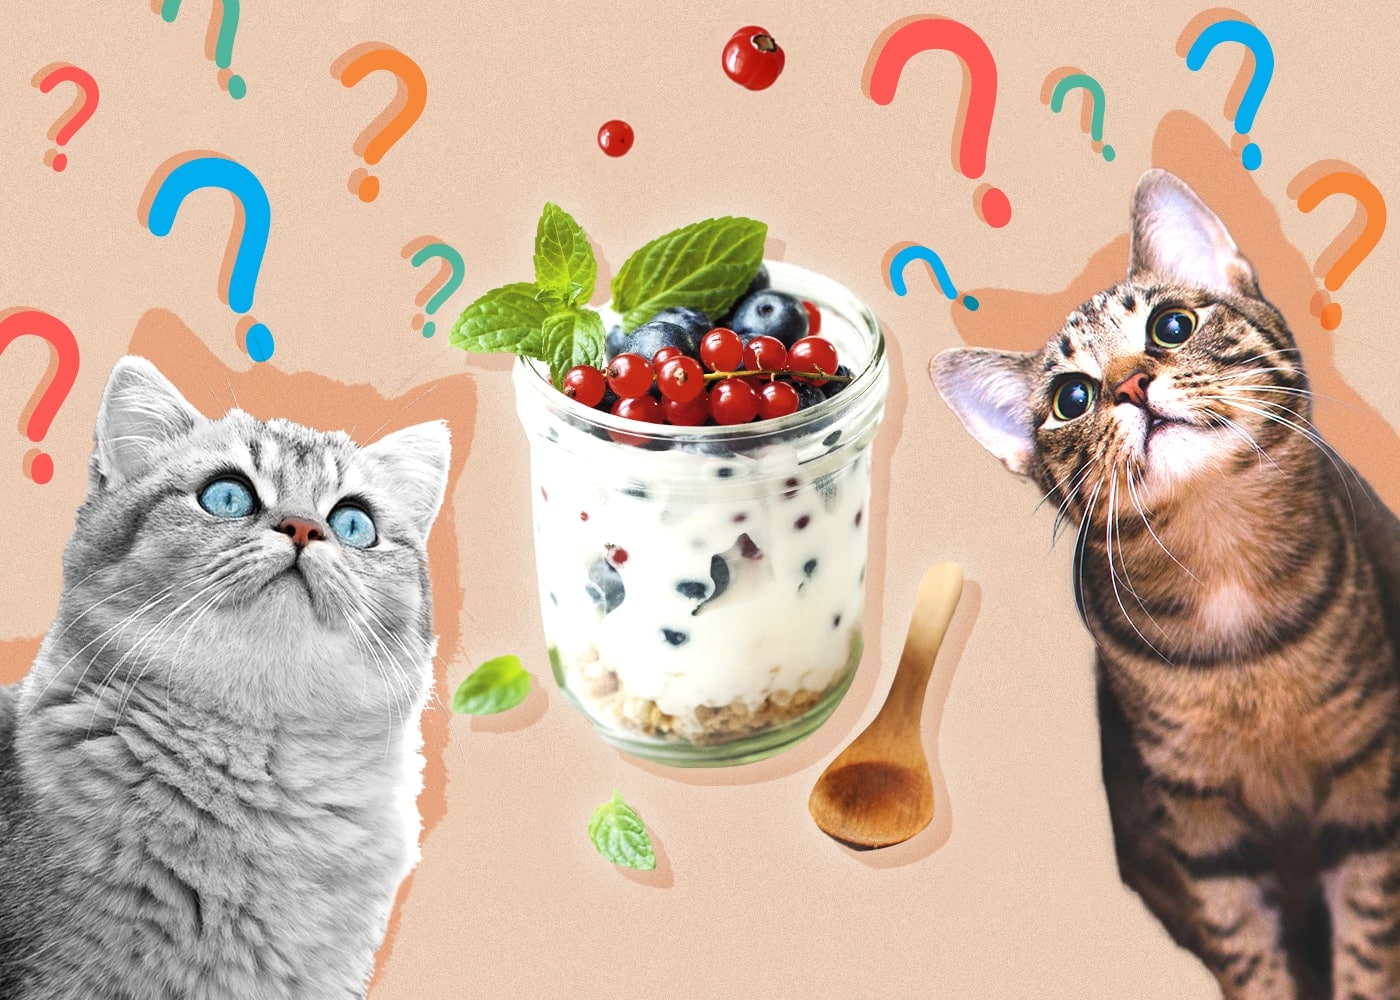 Can Cats Eat Yogurt